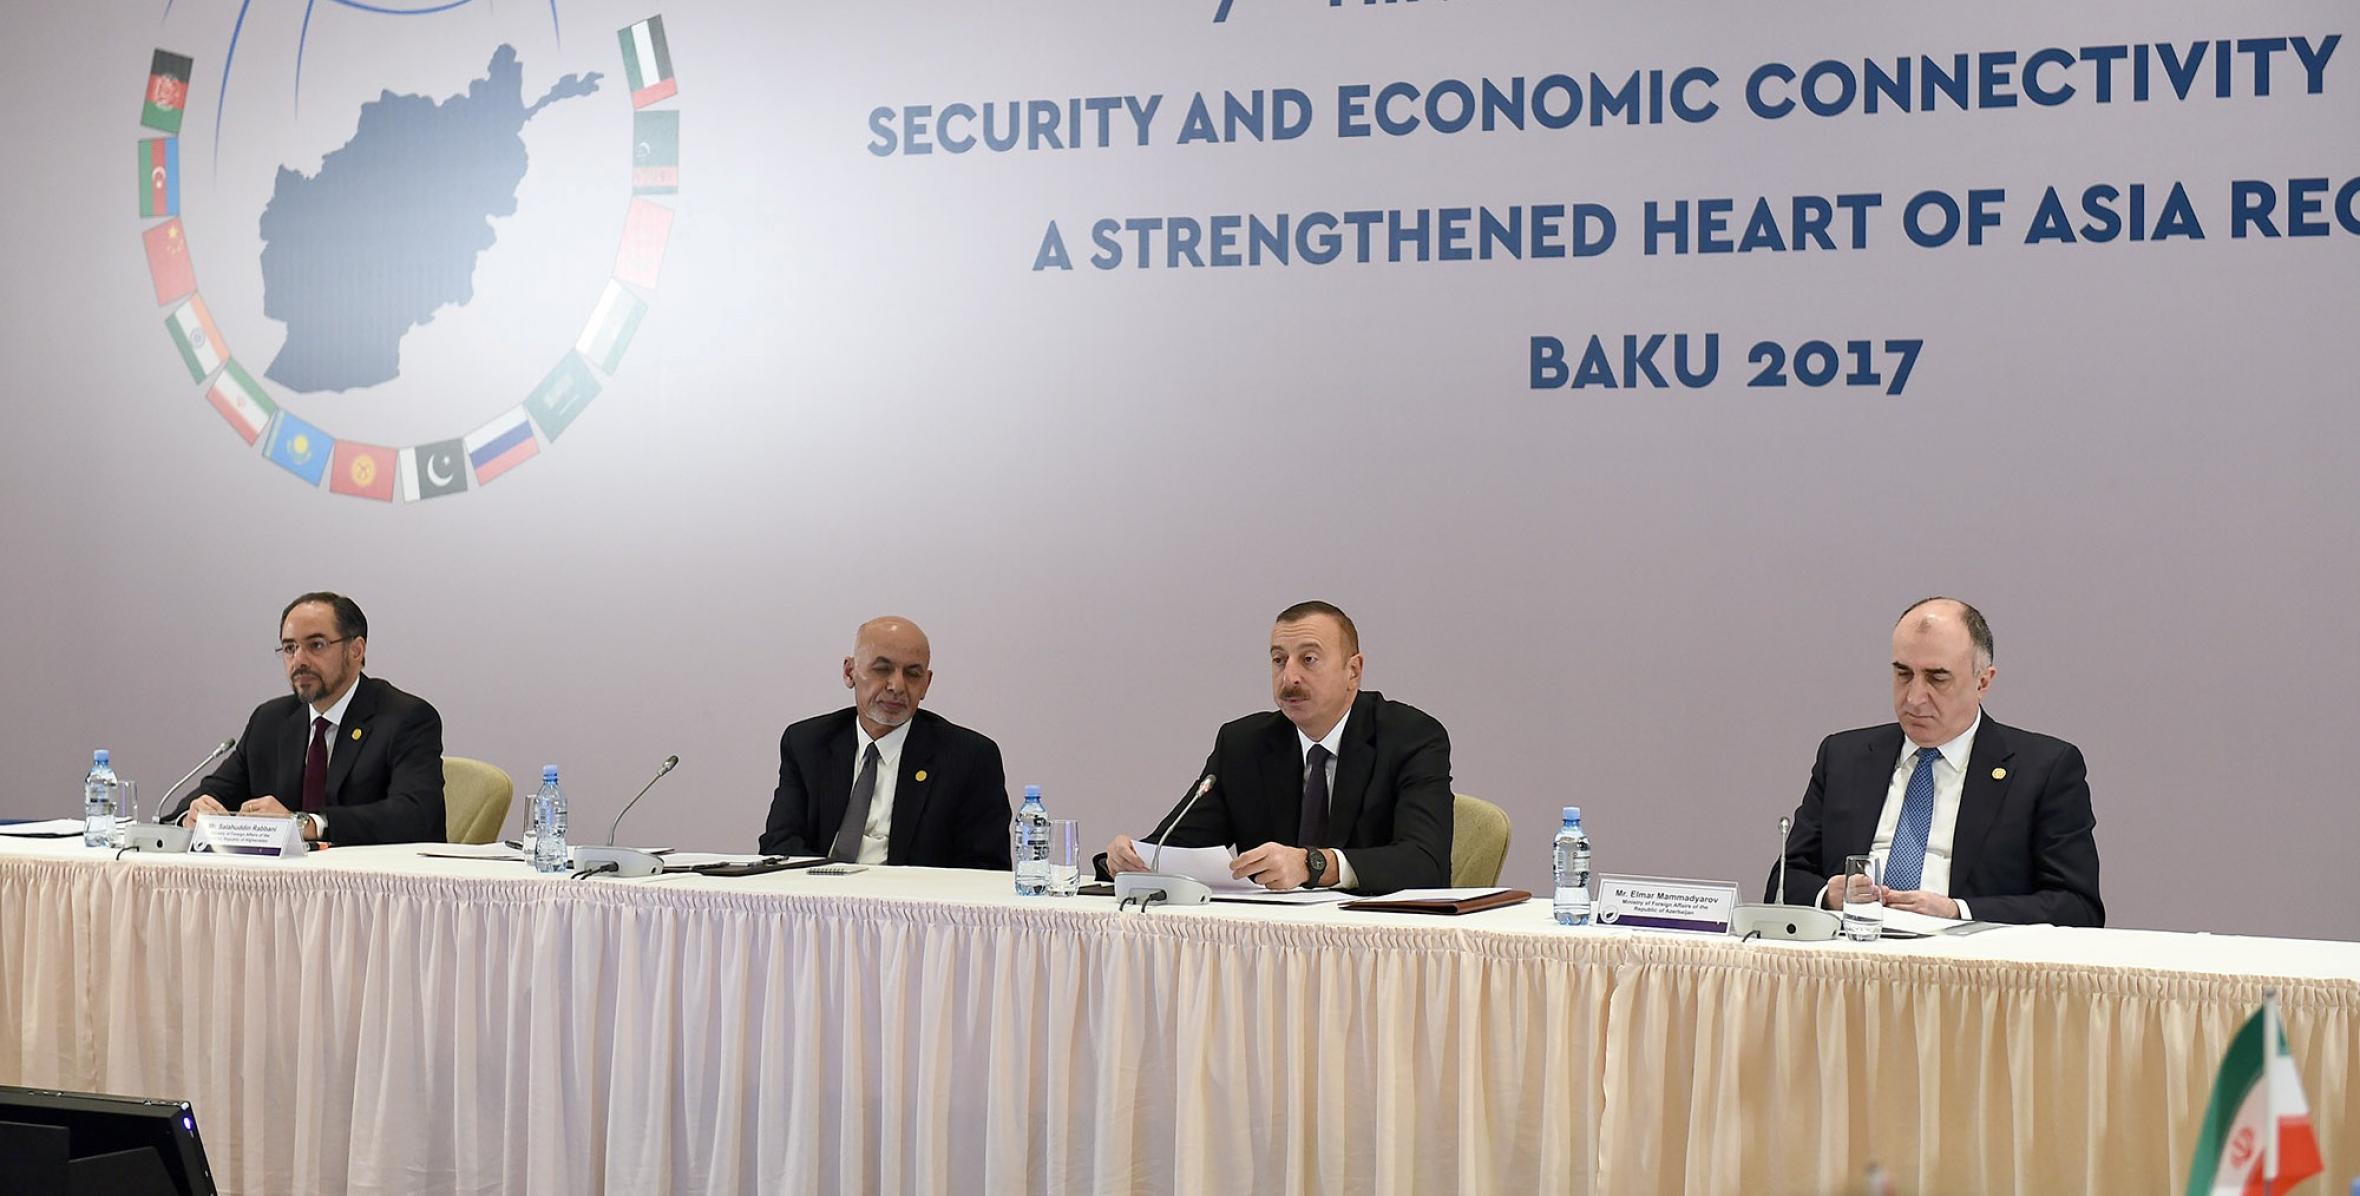 В Баку в рамках «Сердце Азии – Стамбульский процесс» прошла 7-я министерская конференция на тему «Безопасность и экономические связи для усилившегося региона Сердце Азии»